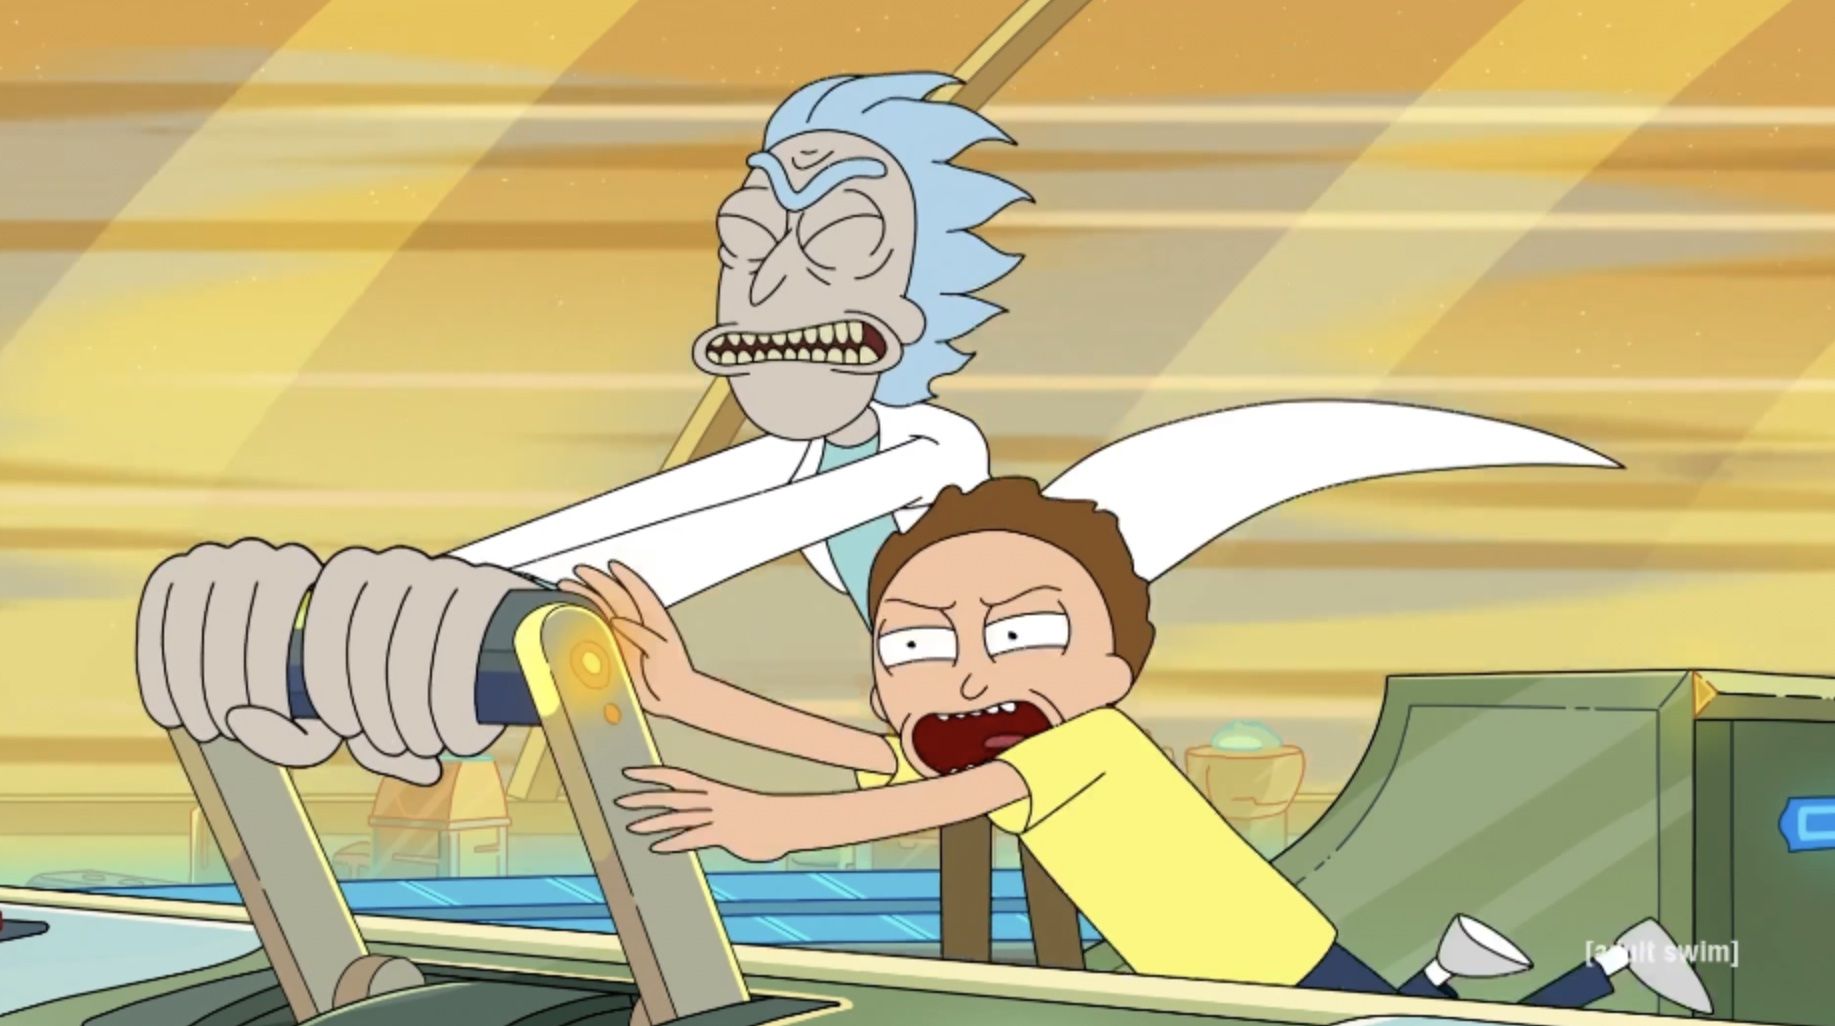 Rick and morty season 5